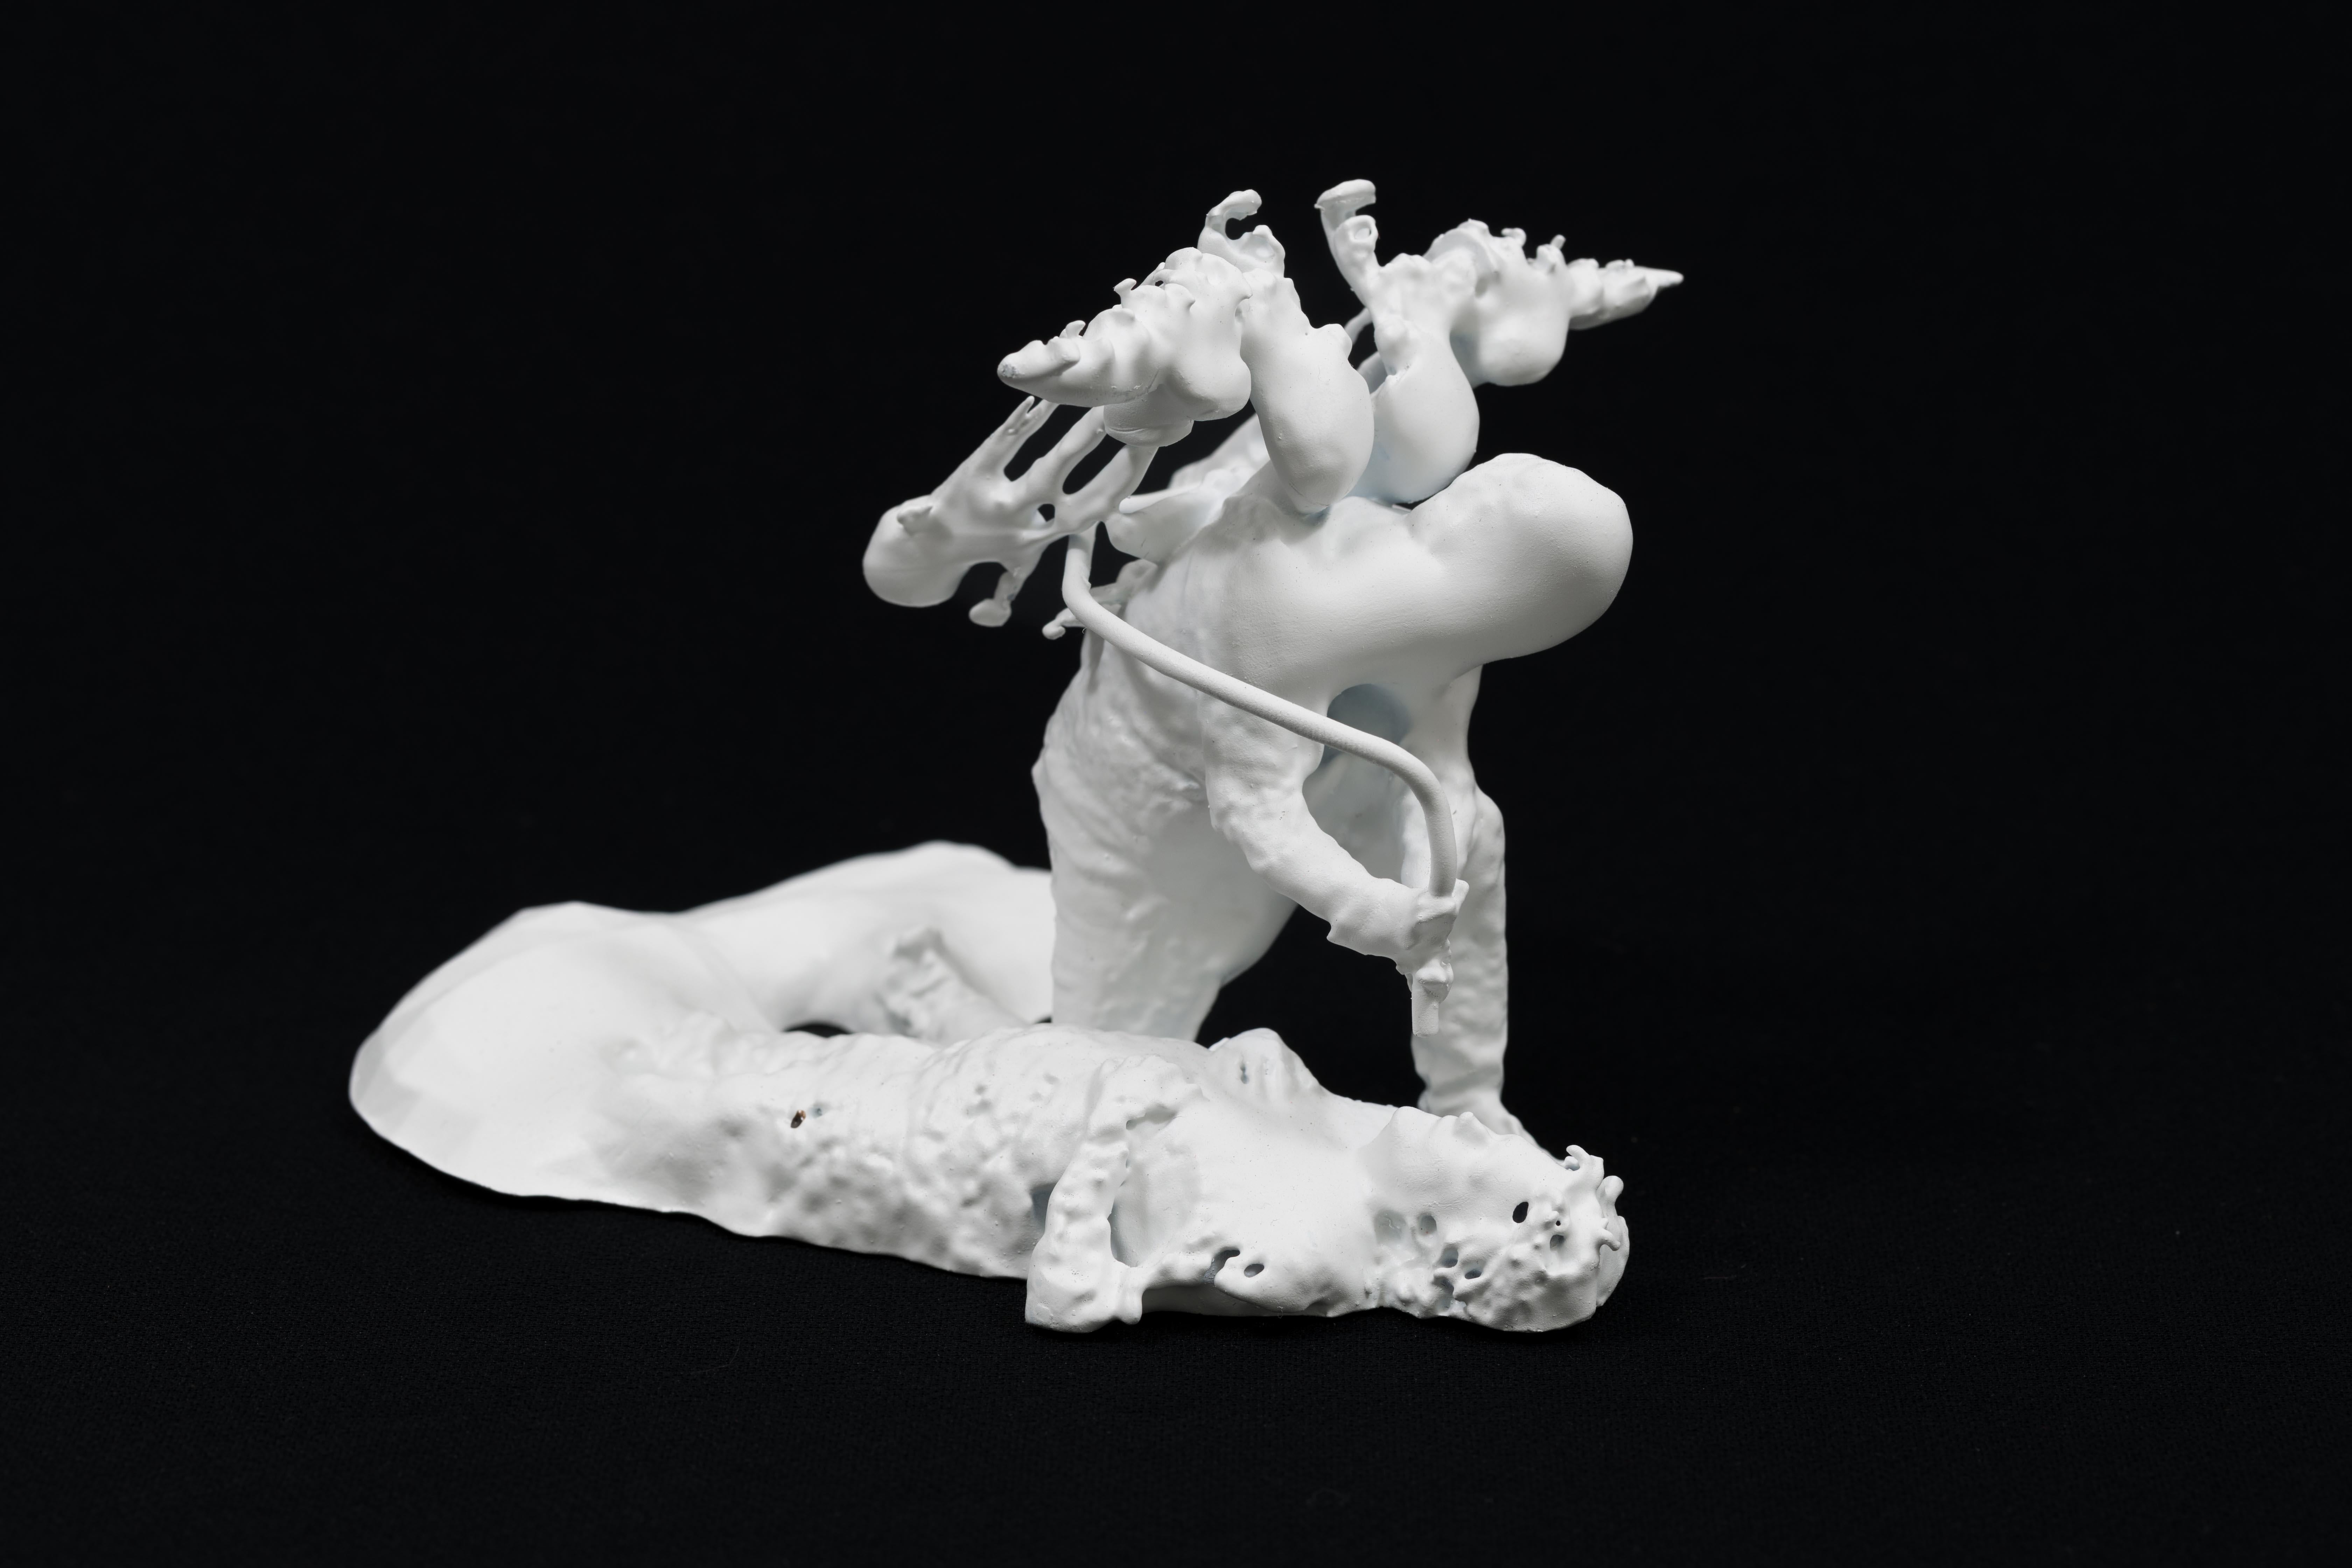 Guillaume Lachapelle verbindet in seinem Werk das Reale mit dem Imaginären, um Miniaturumgebungen und -szenarien zu schaffen, die die Verbindungen zwischen dem Menschen und seiner Alltagswelt aufzeigen. In Extrapolations extrahiert Lachapelle